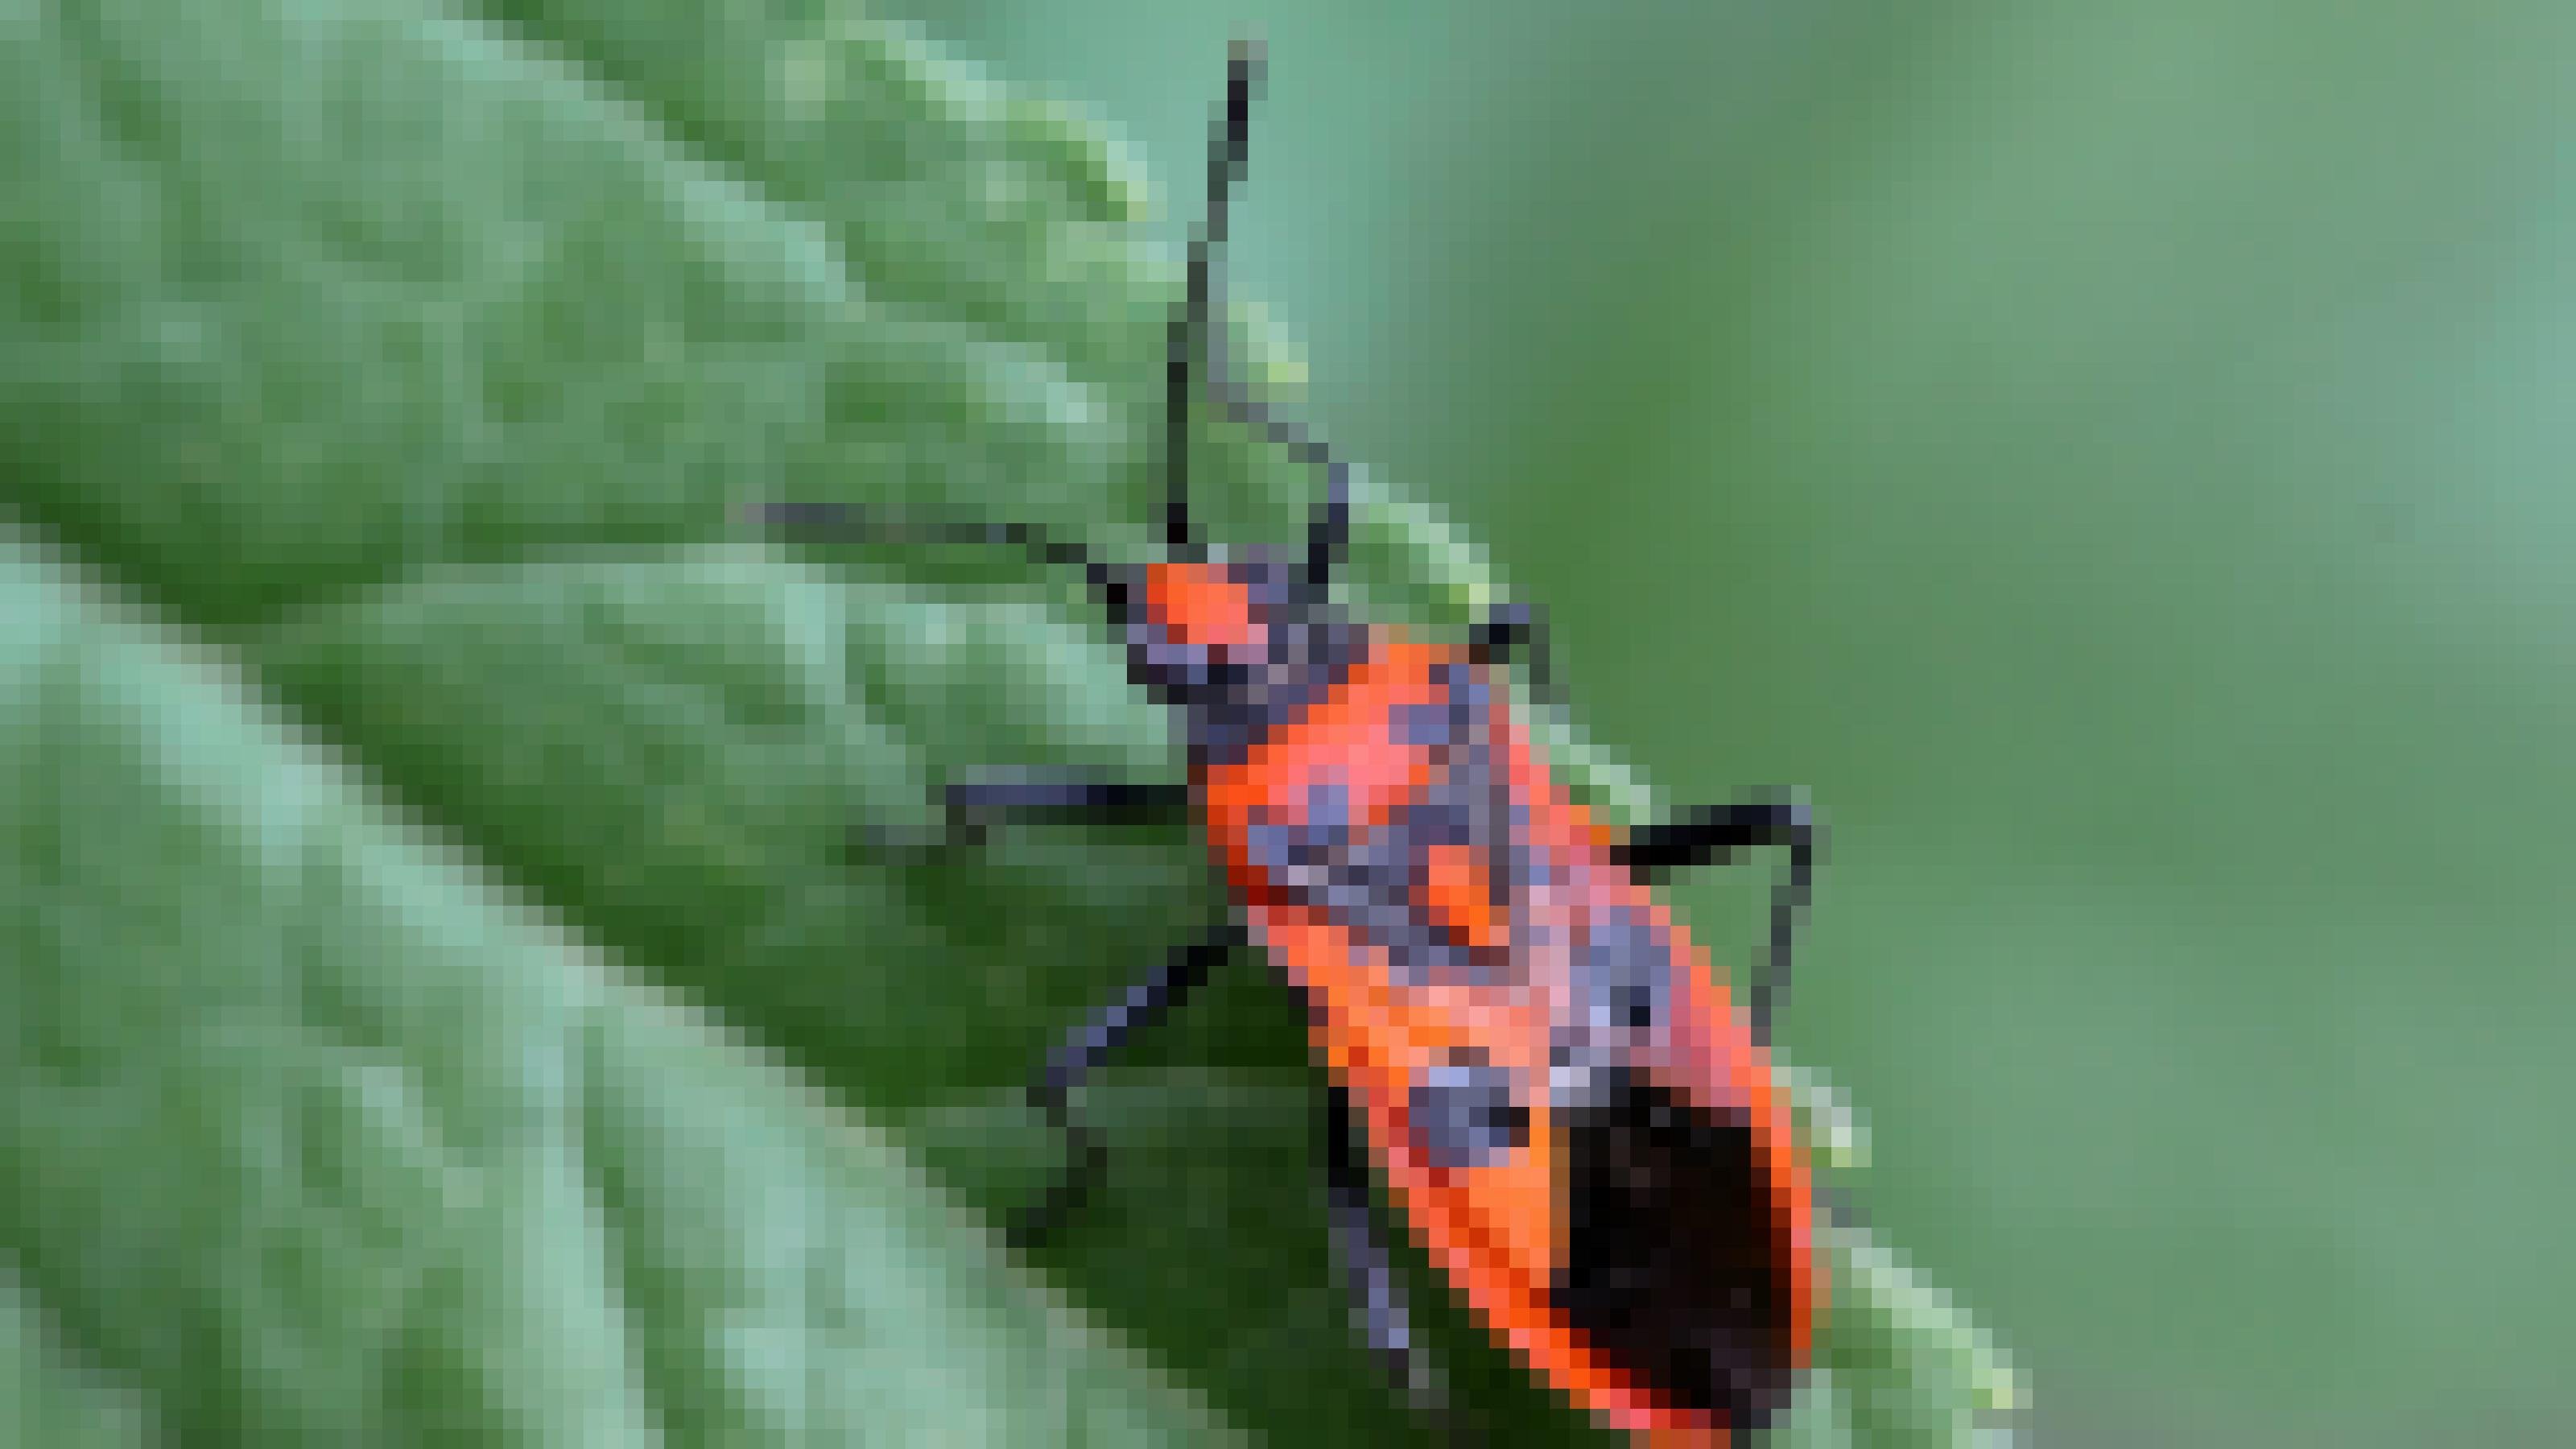 Ein rot-schwarz gezeichnetes Insekt sitzt auf einem grünen Blatt.